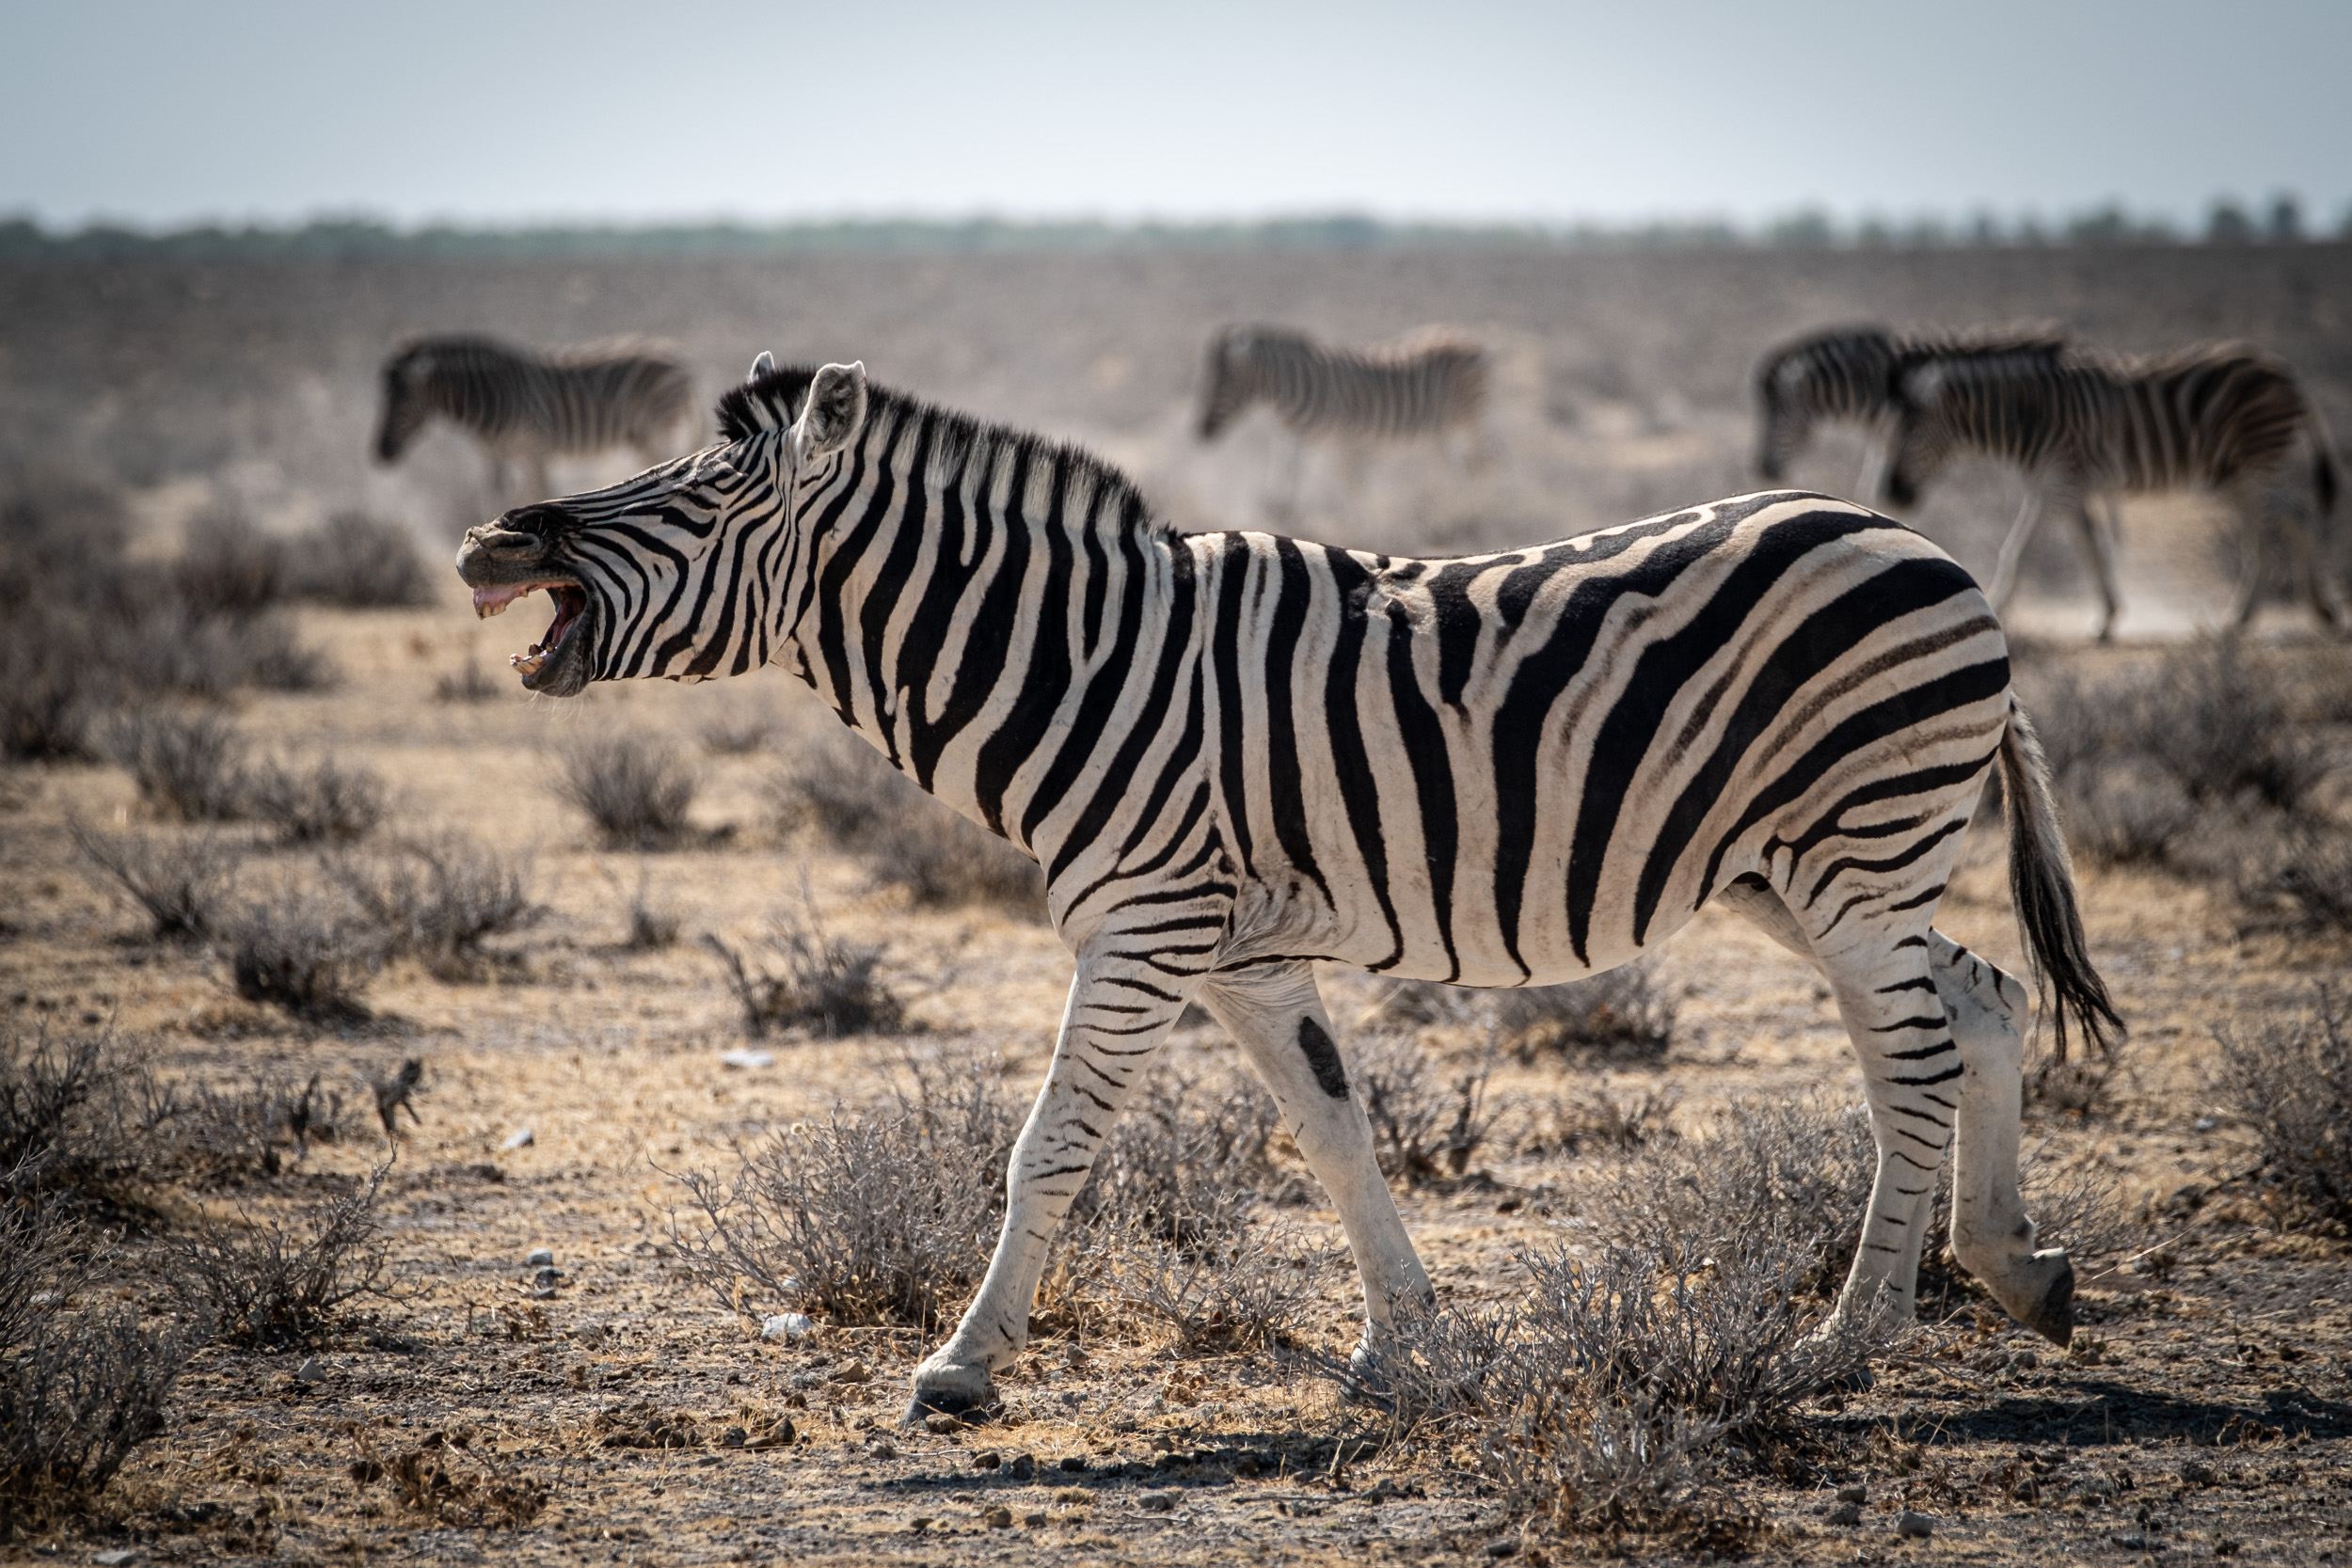 Zebra in Namibia 2018